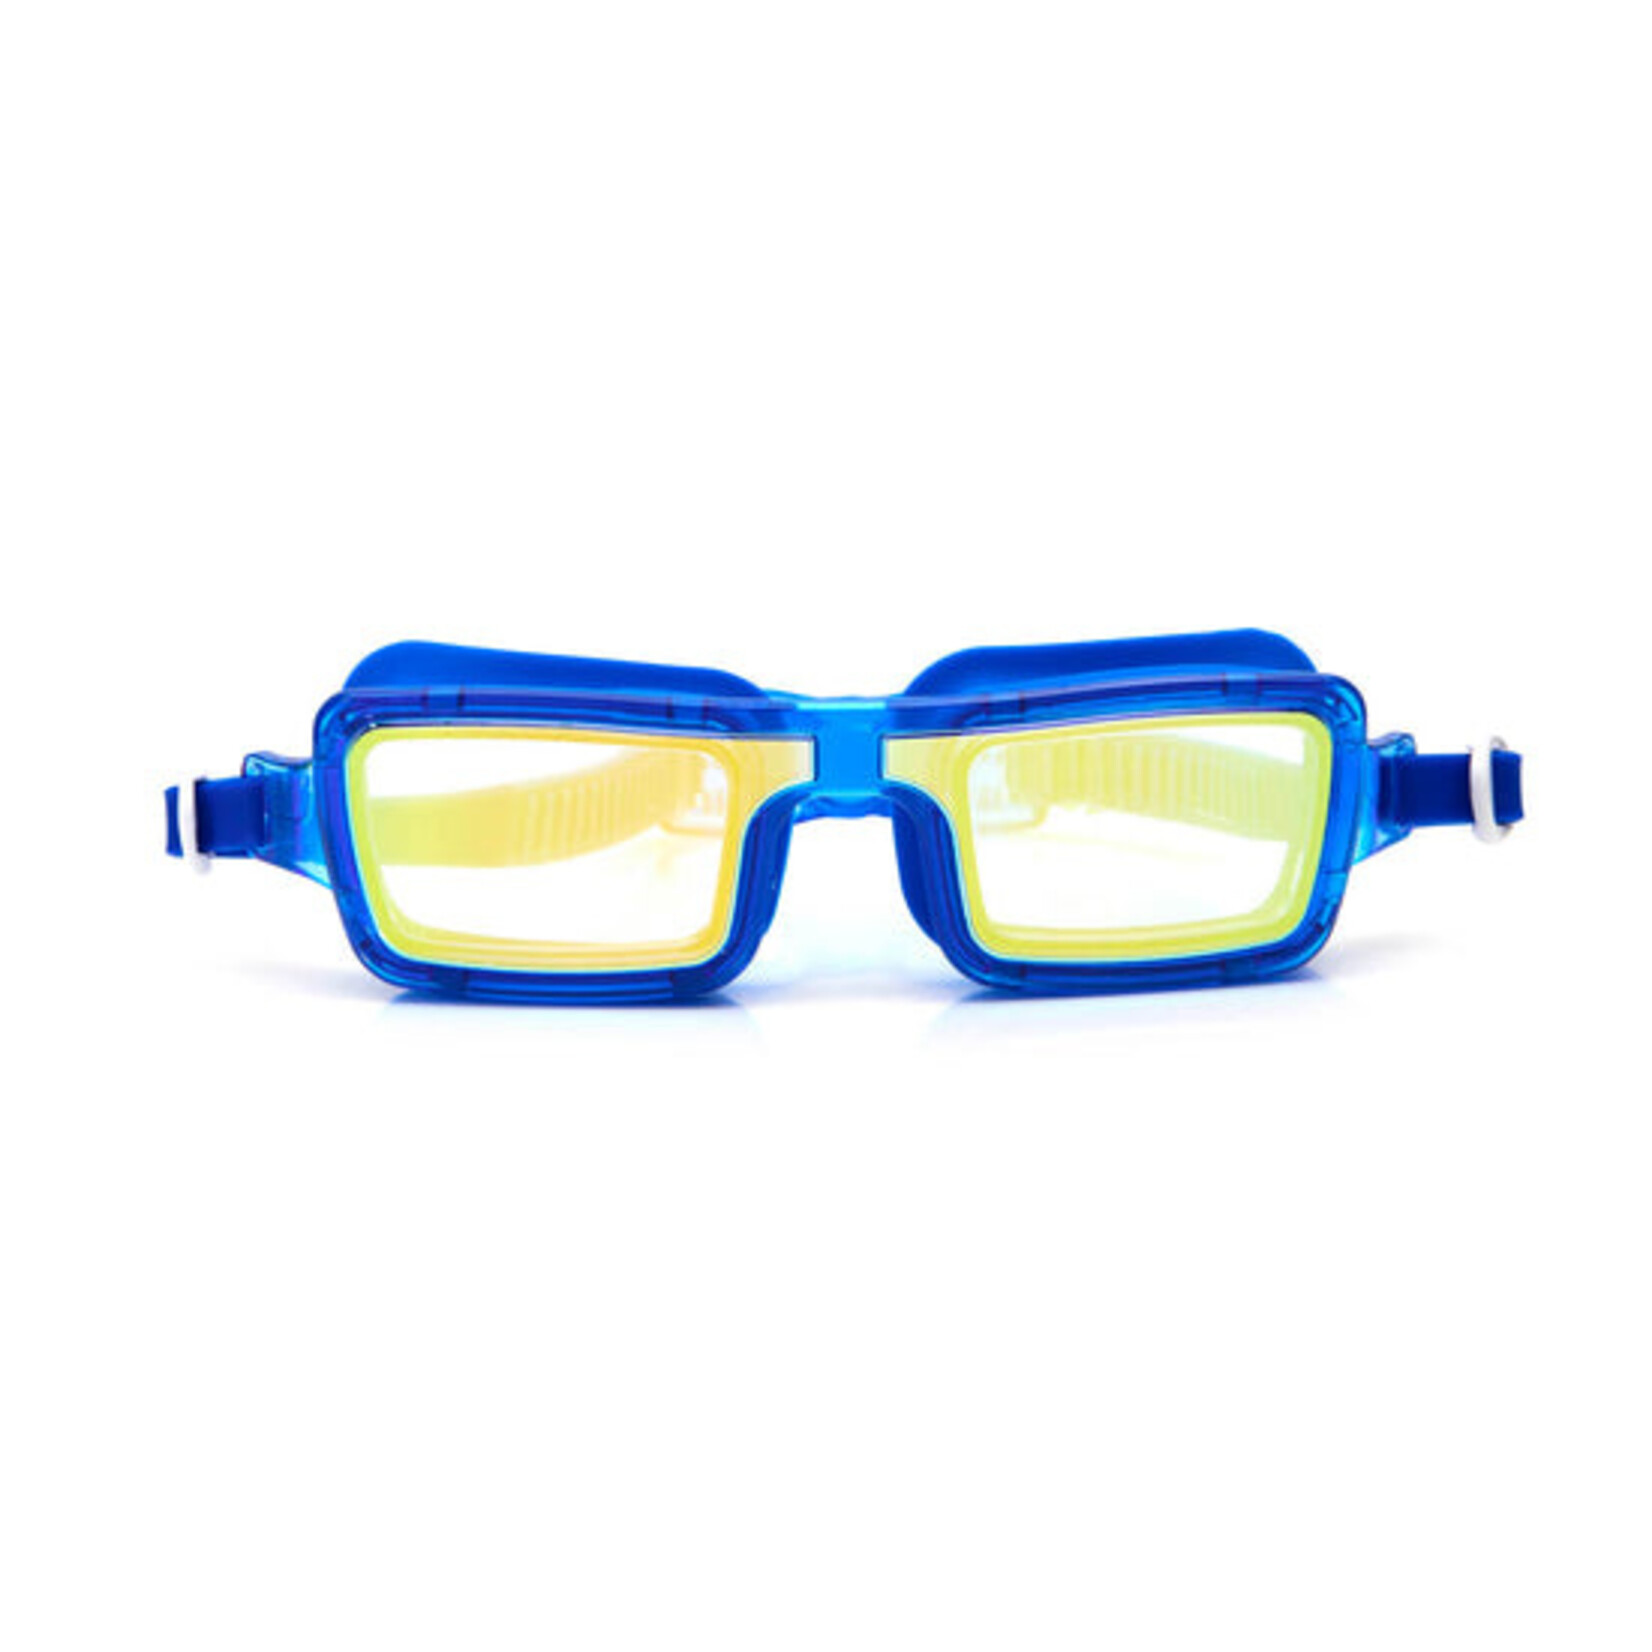 Retro Bahama Blue Goggles